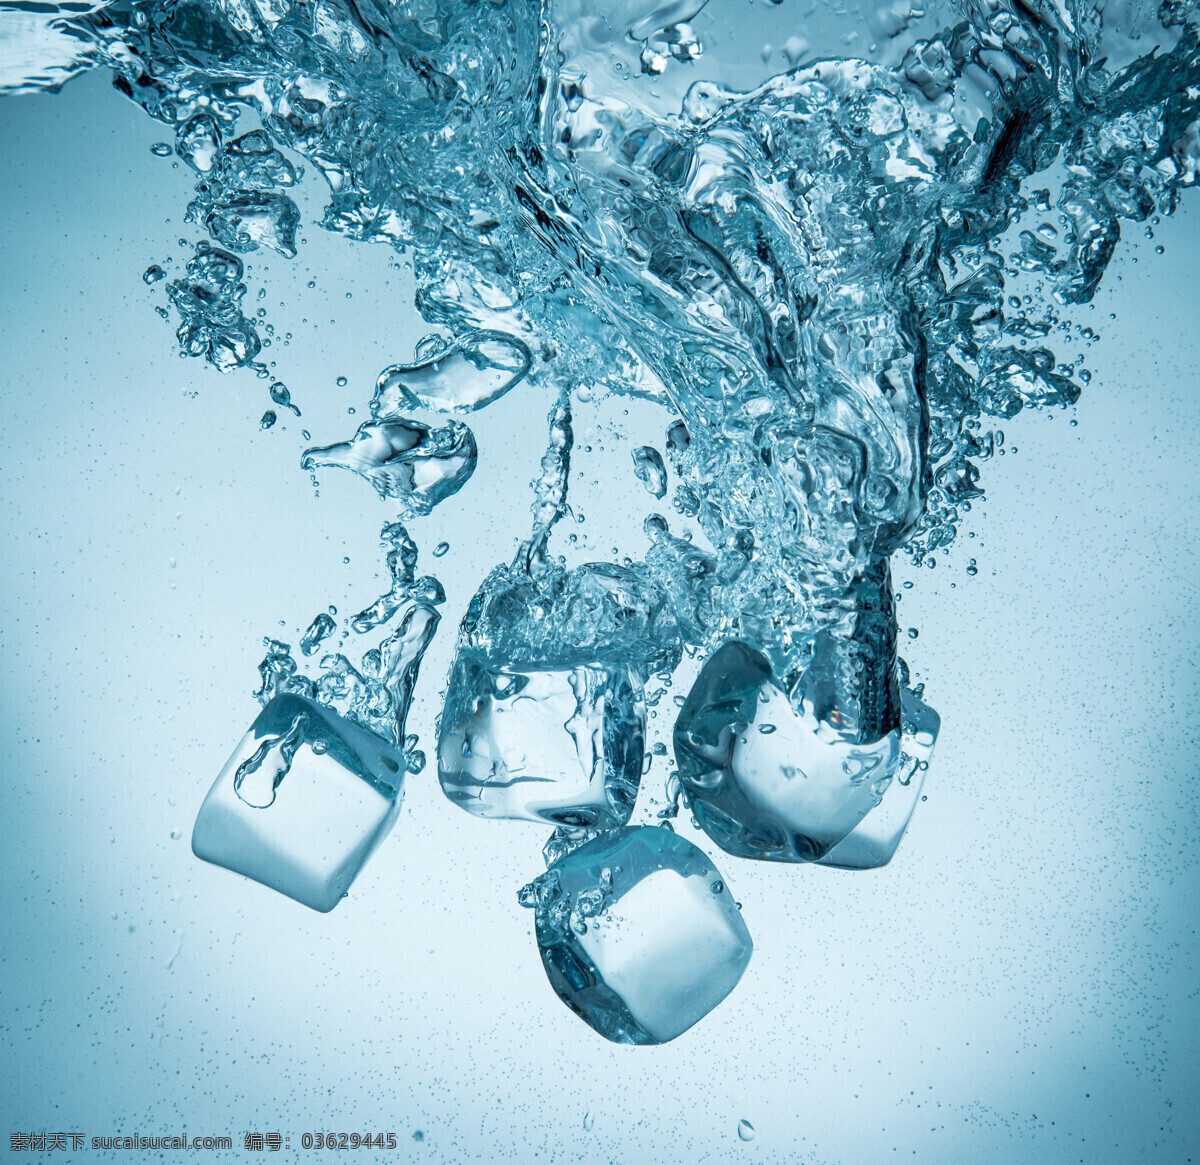 水平面 液体 夏季主题 冰块 冰块设计 水 水滴 落入 水里 冰爽 冰爽夏季 青色 天蓝色